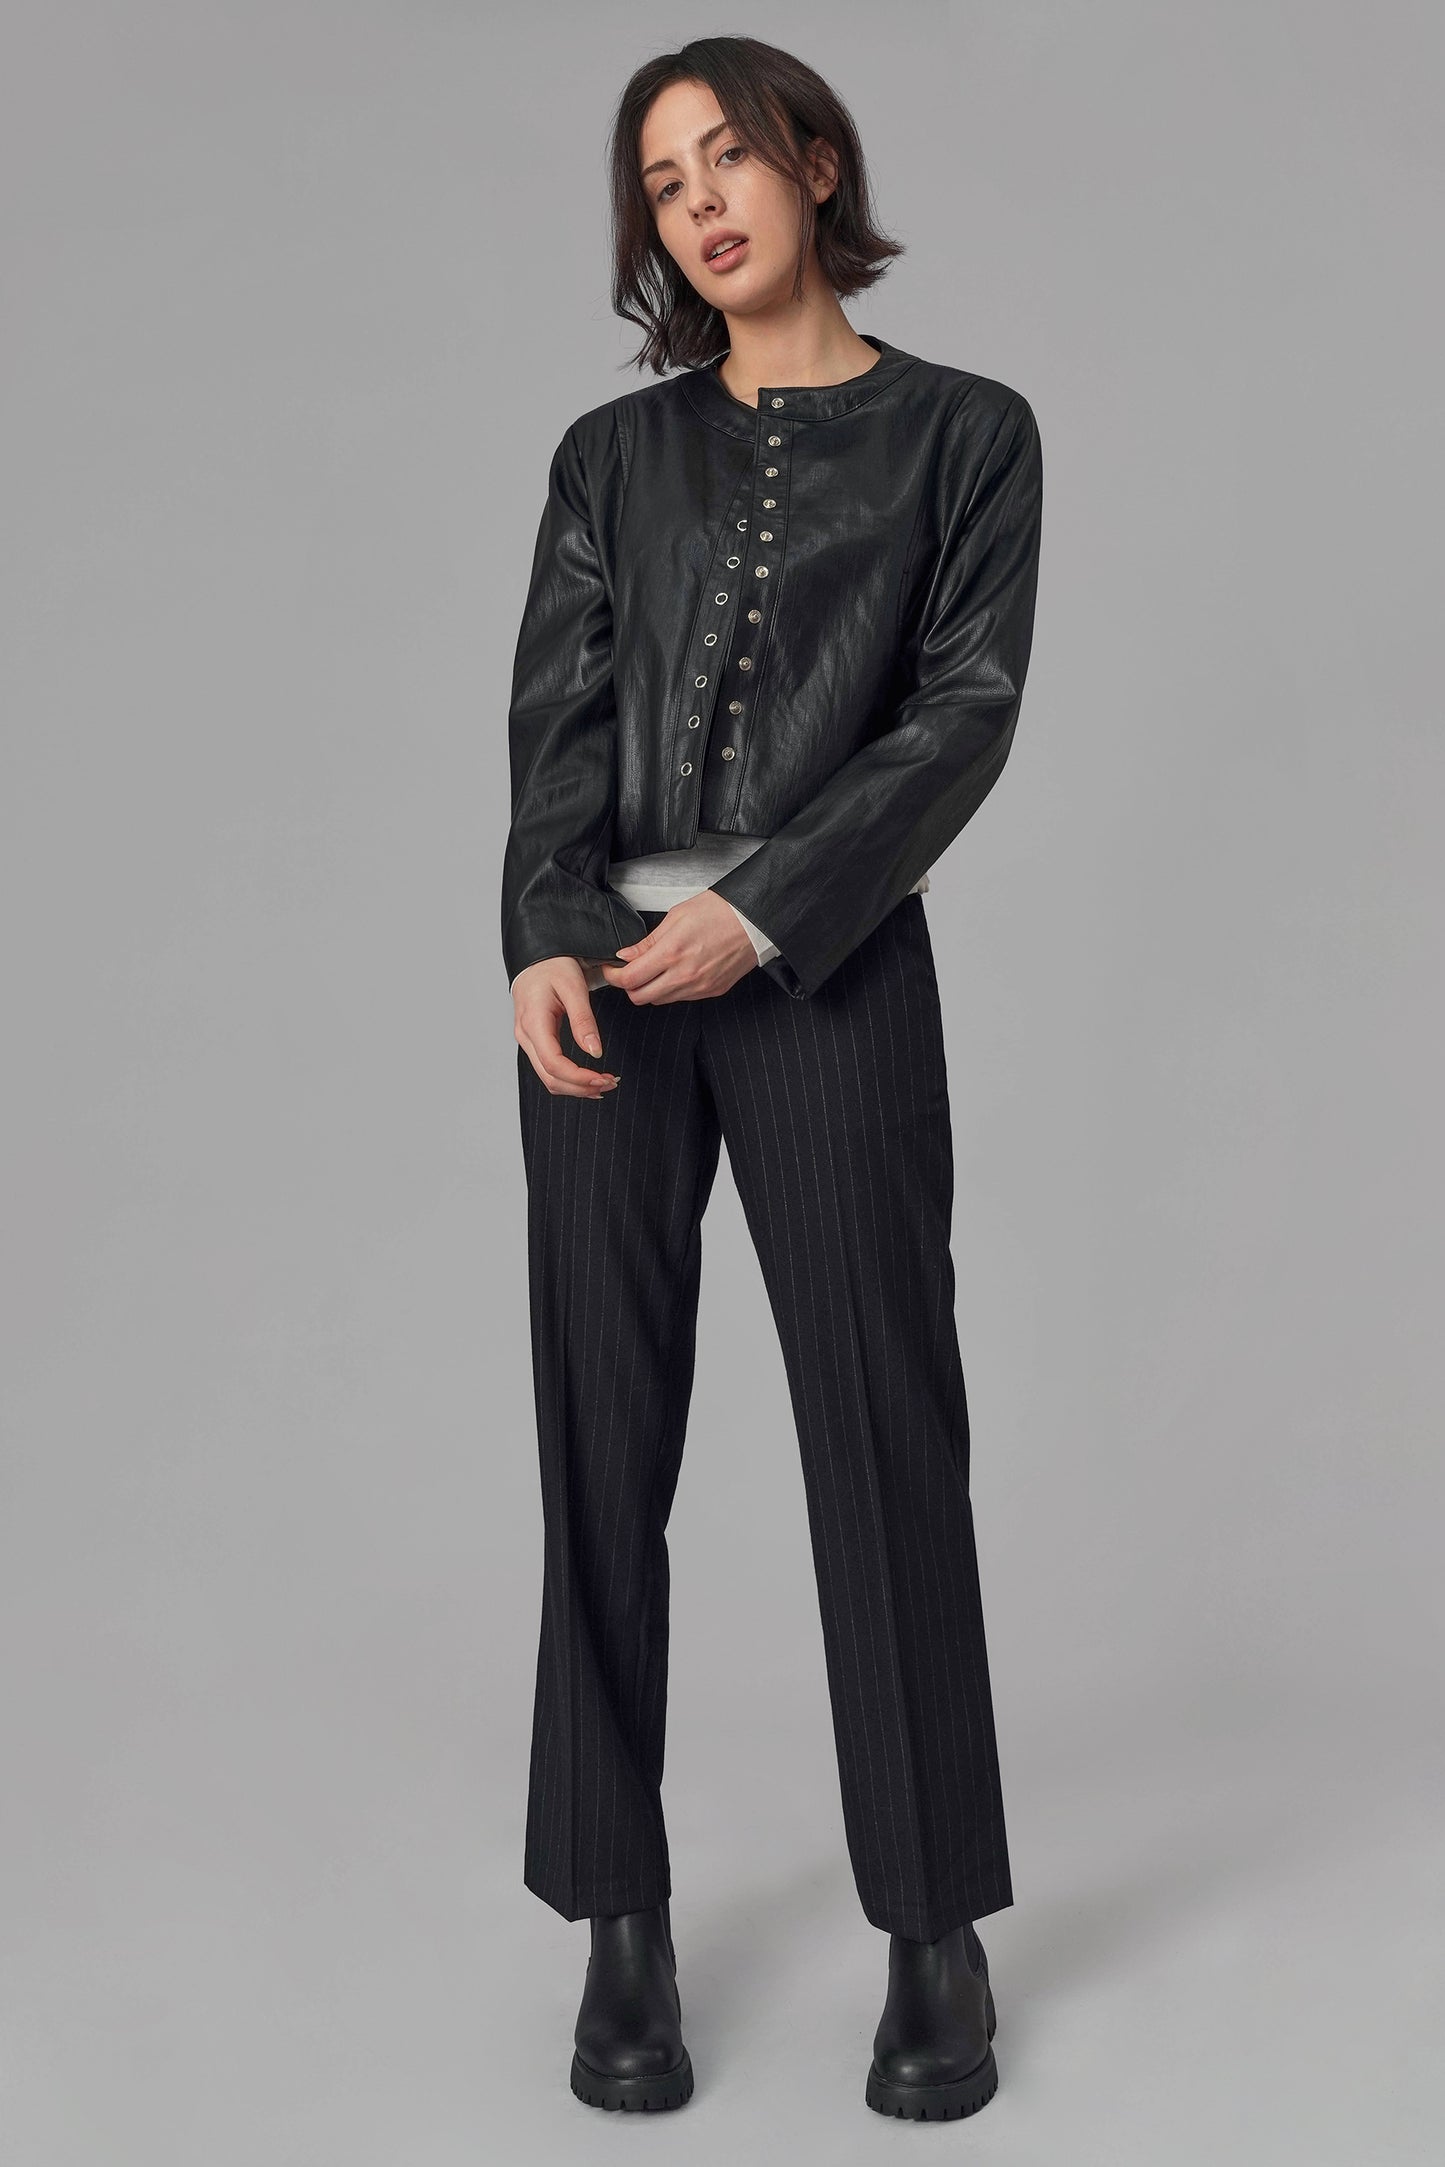 seoul-bolt-leather-jacket-black